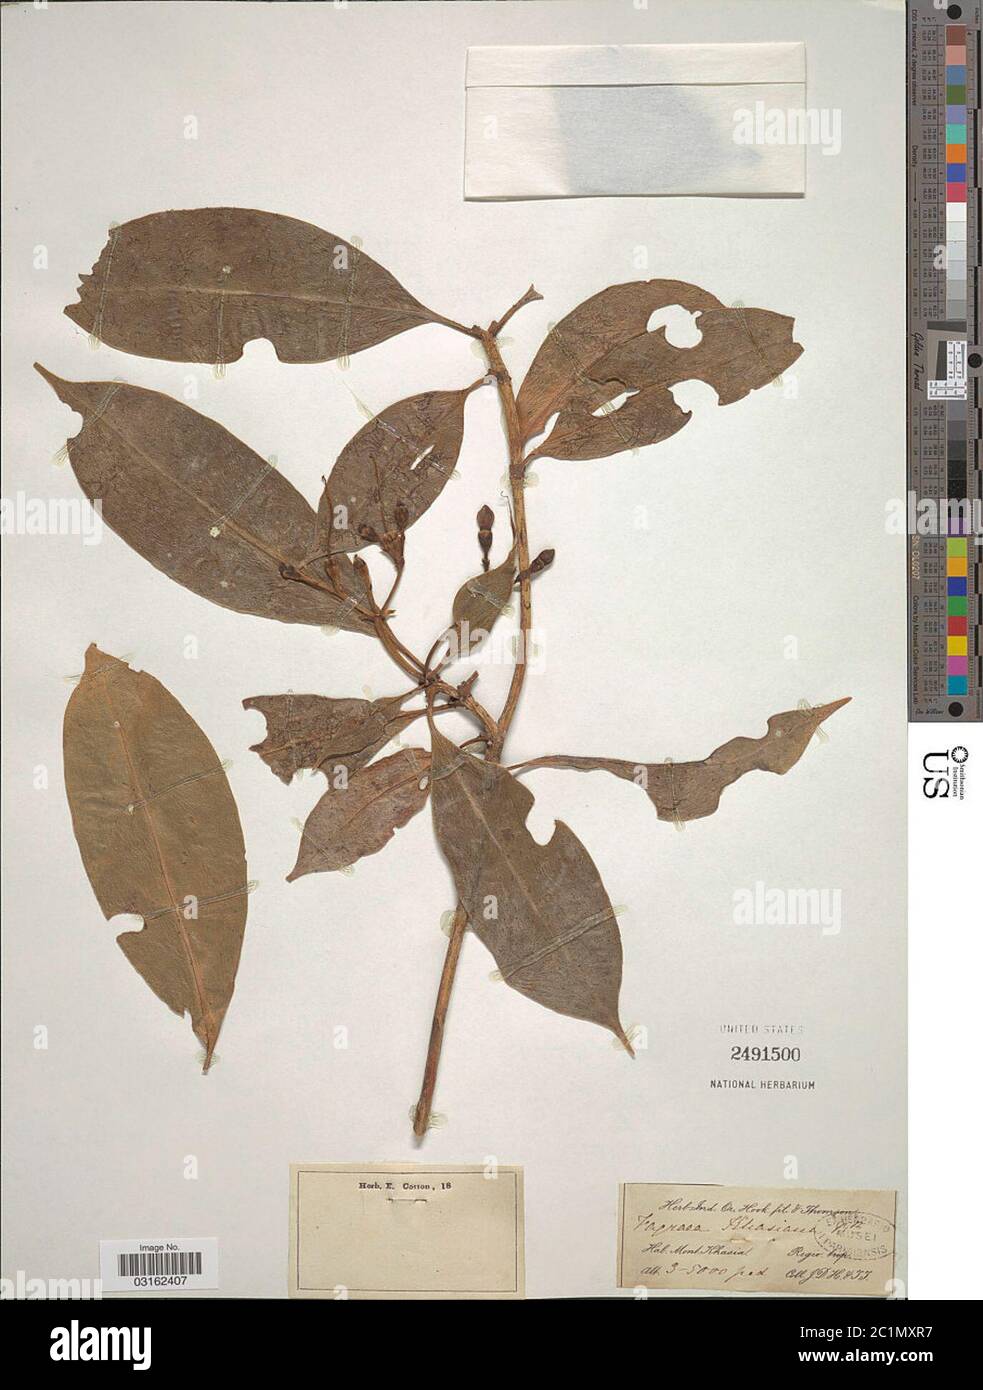 Fagraea khasiana Benth Fagraea khasiana Benth. Stock Photo